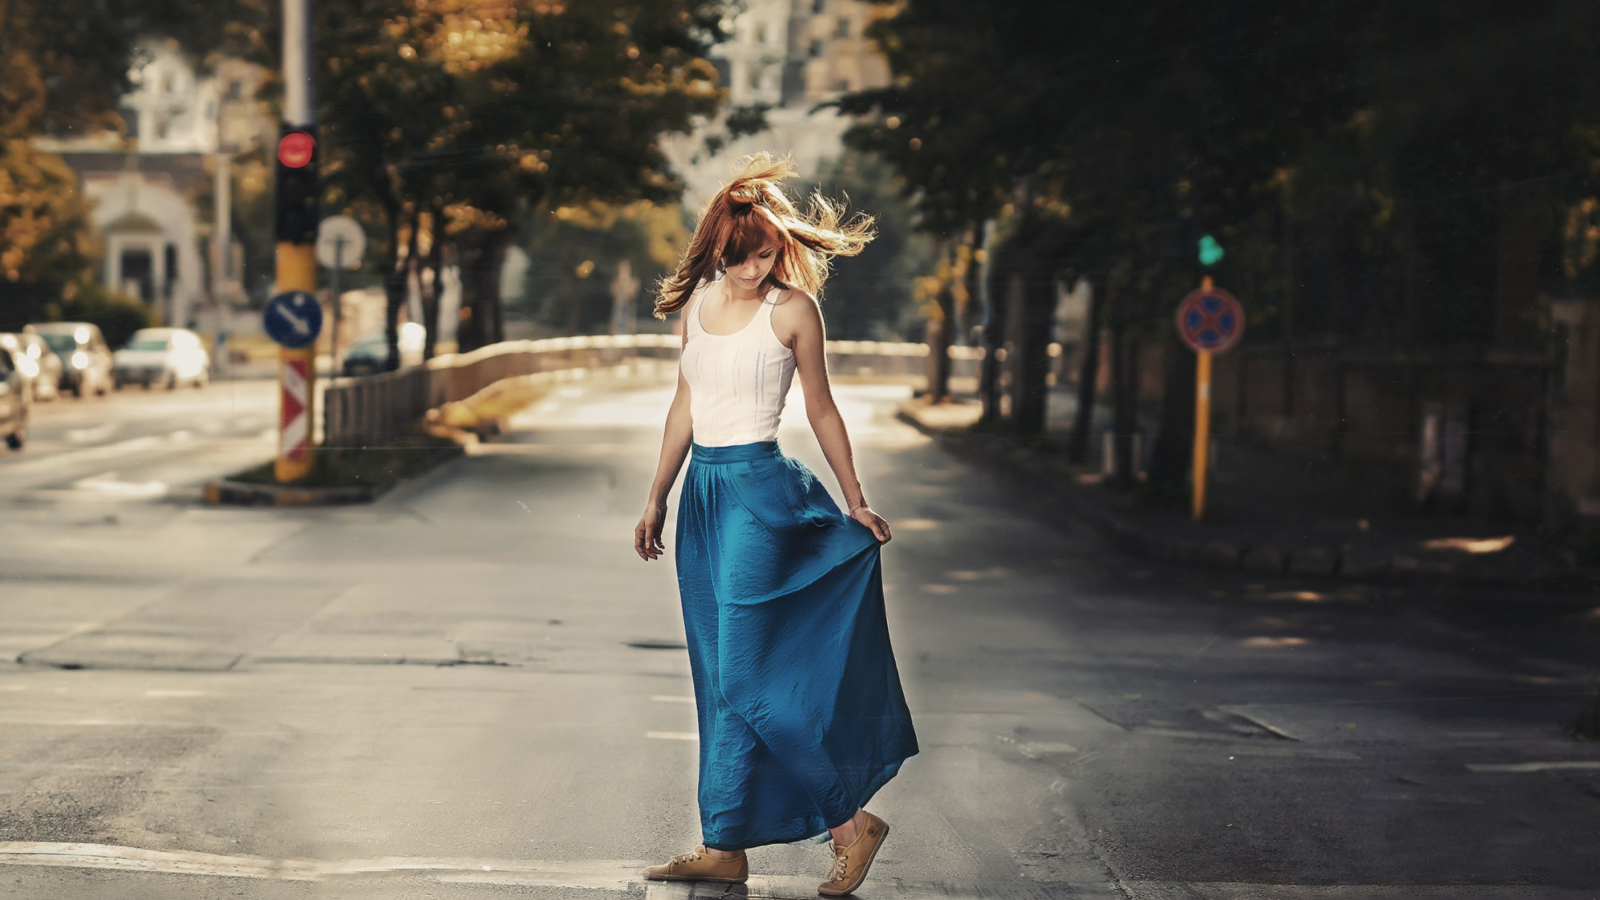 Girl In Long Blue Skirt On Street wallpaper 1600x900